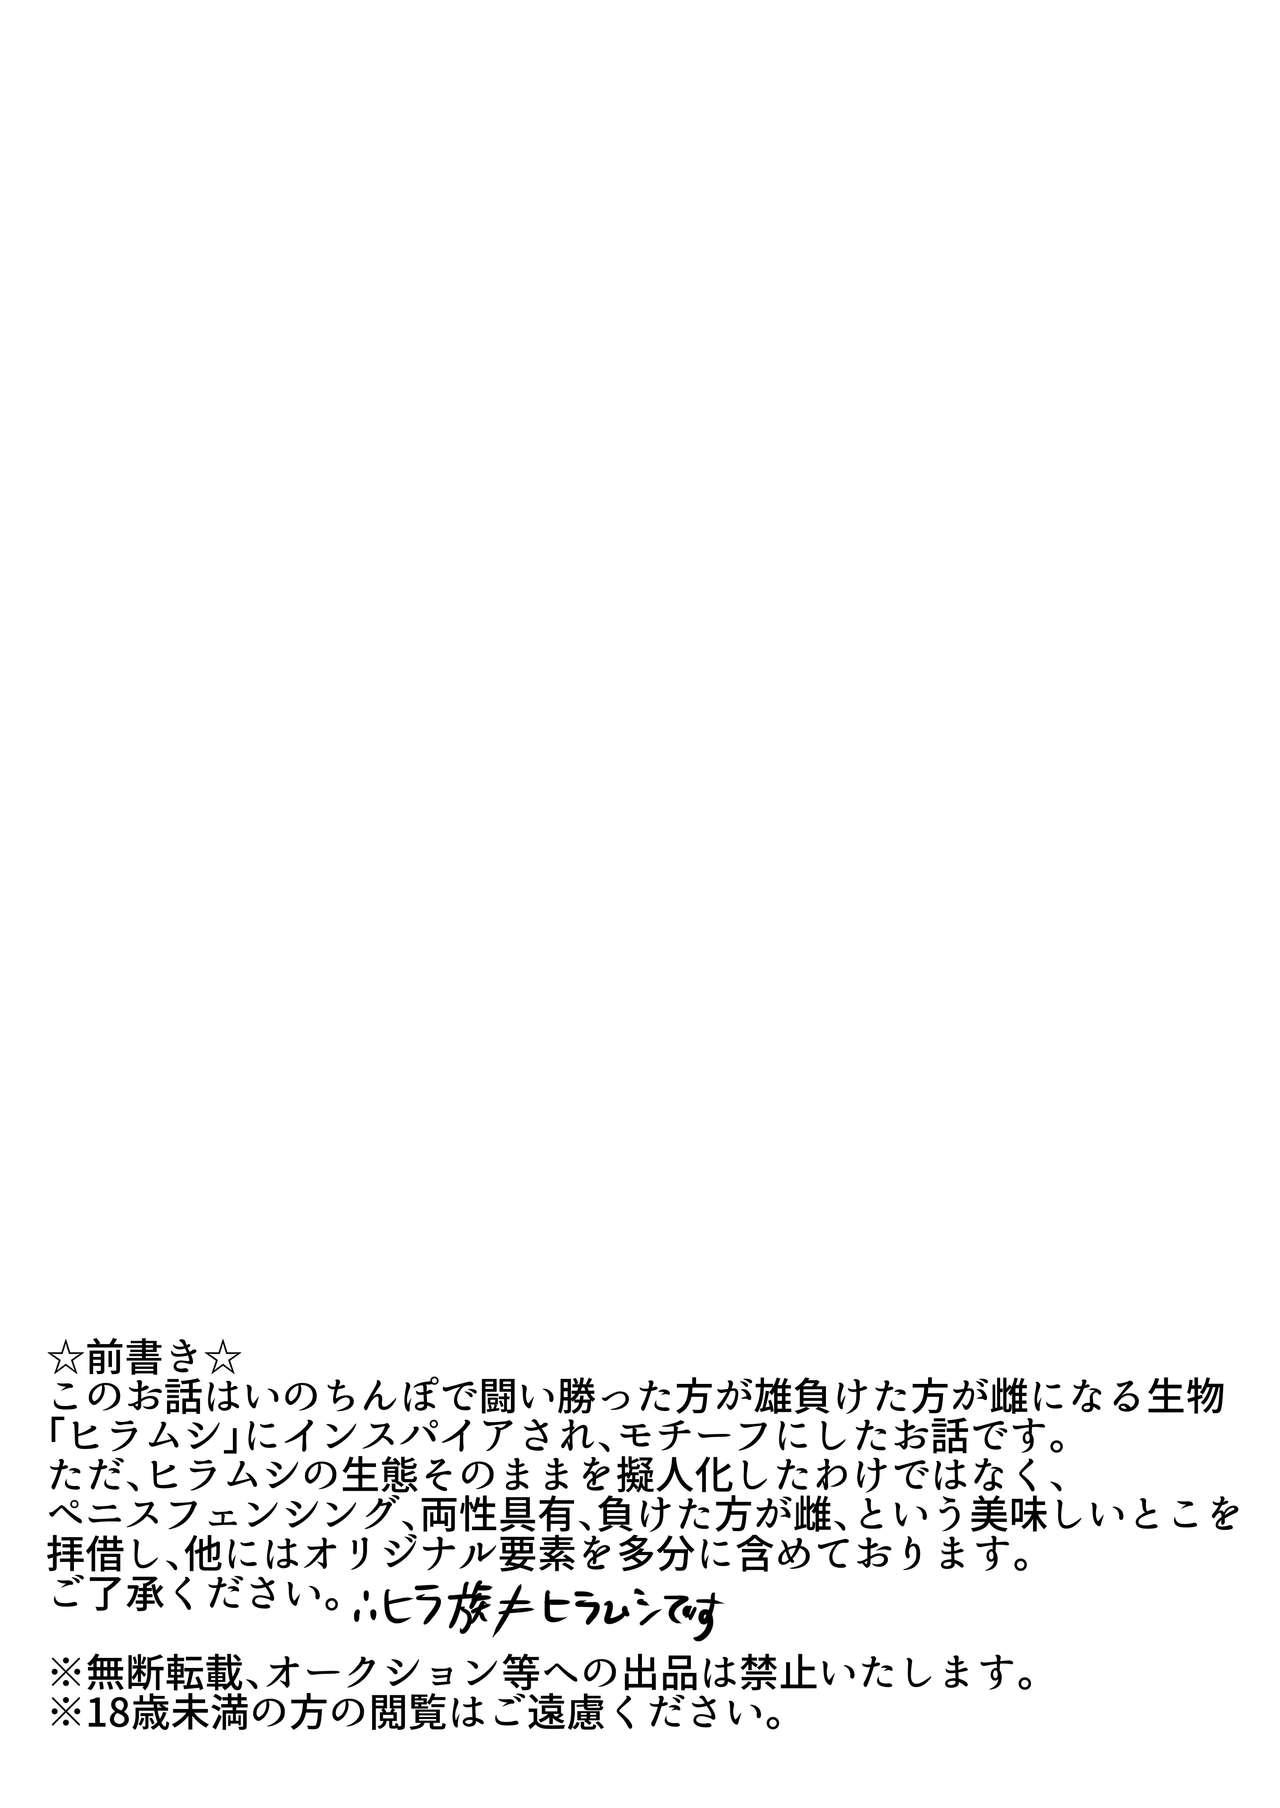 Glamcore Hira-zoku no Hanashi - Original Grande - Page 2